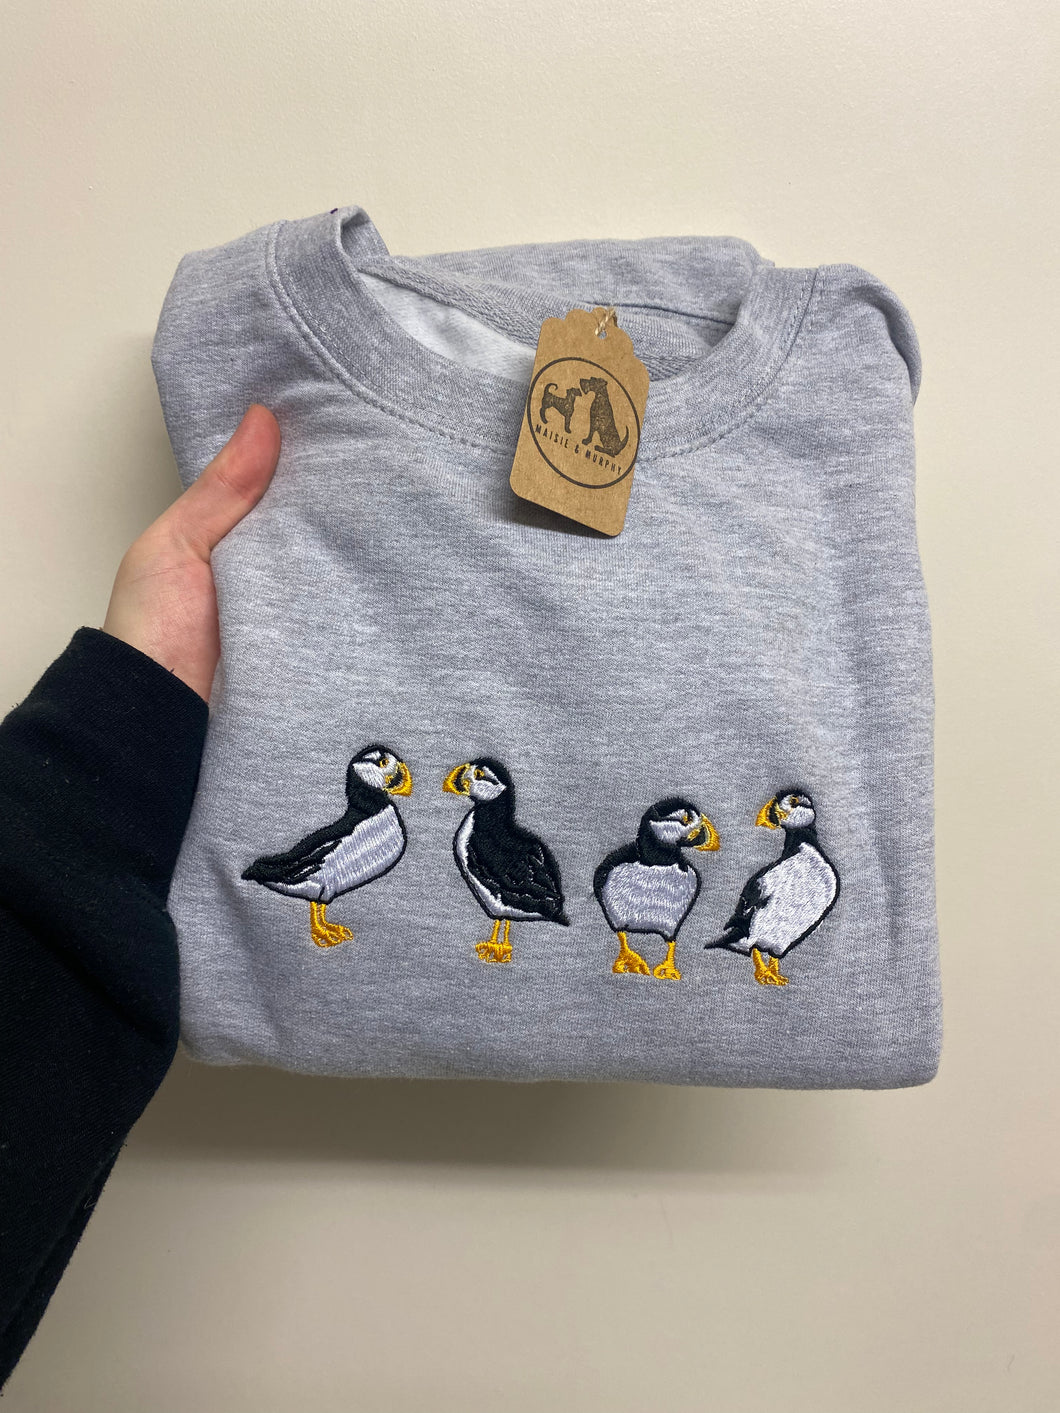 Other animal design sweatshirts